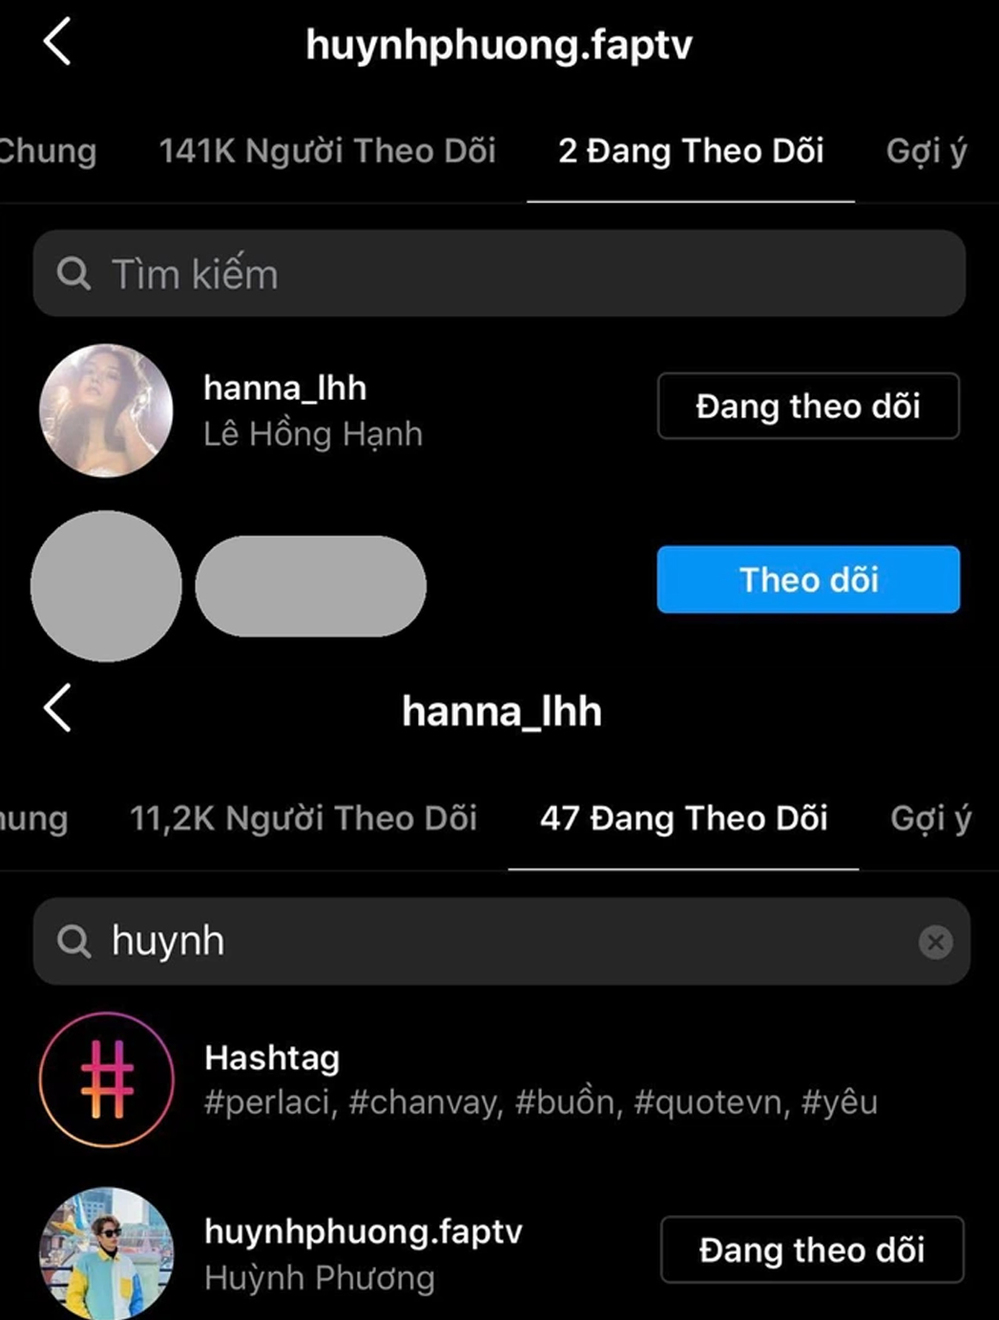 Trên Instagram cá nhân, Huỳnh Phương vẫn theo dõi Lê Hồng Hạnh